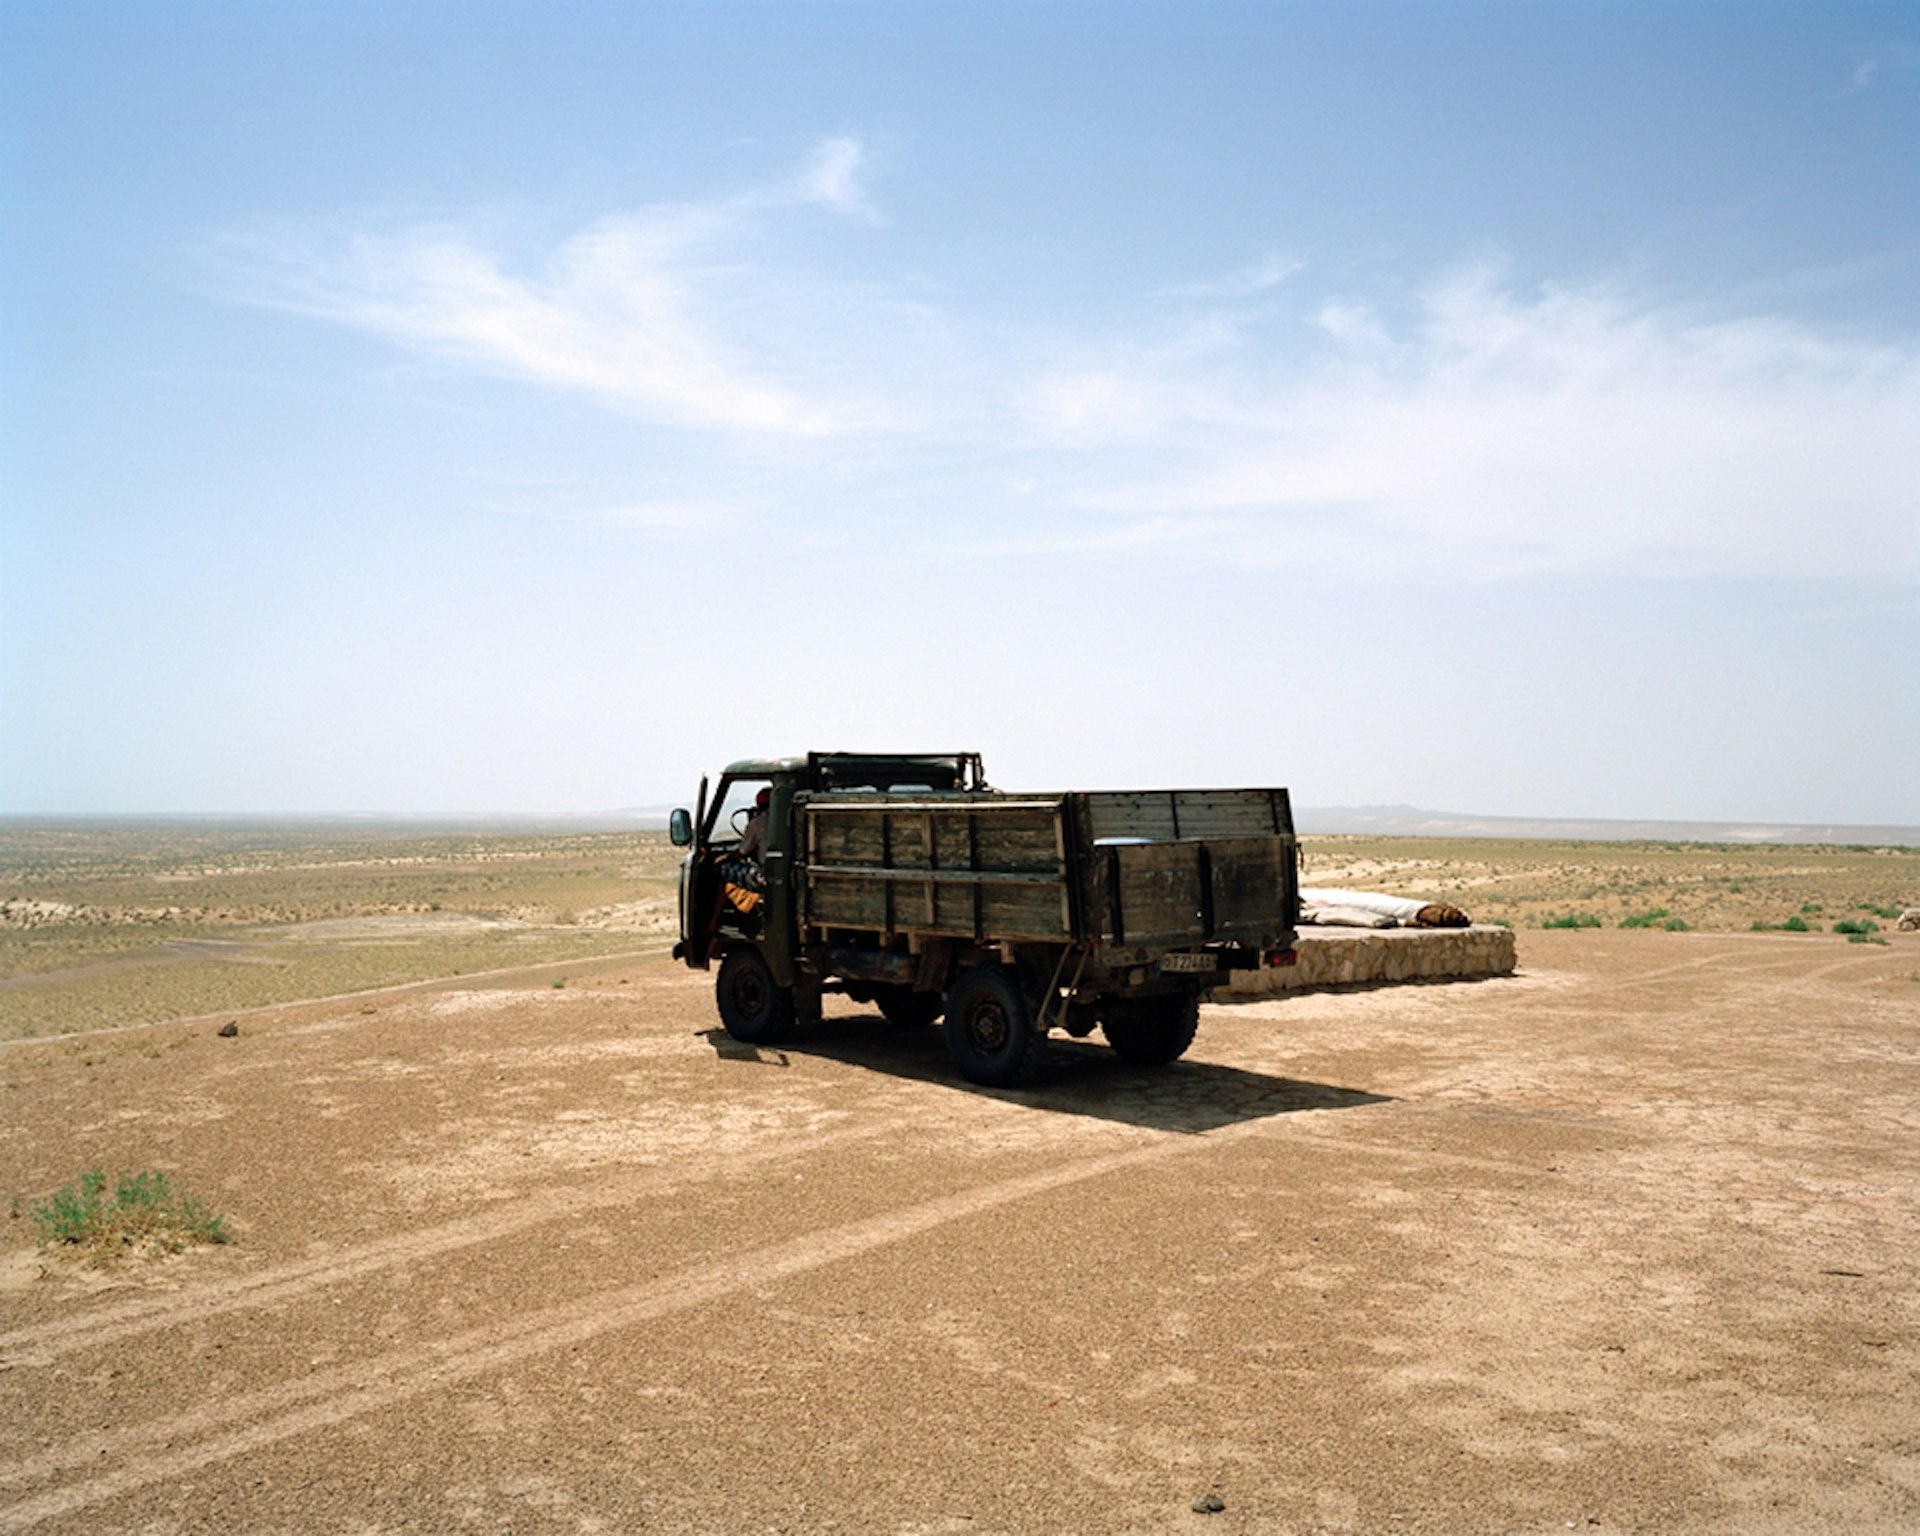 Marco-Barbieri-Water-In-The-Desert-Truck